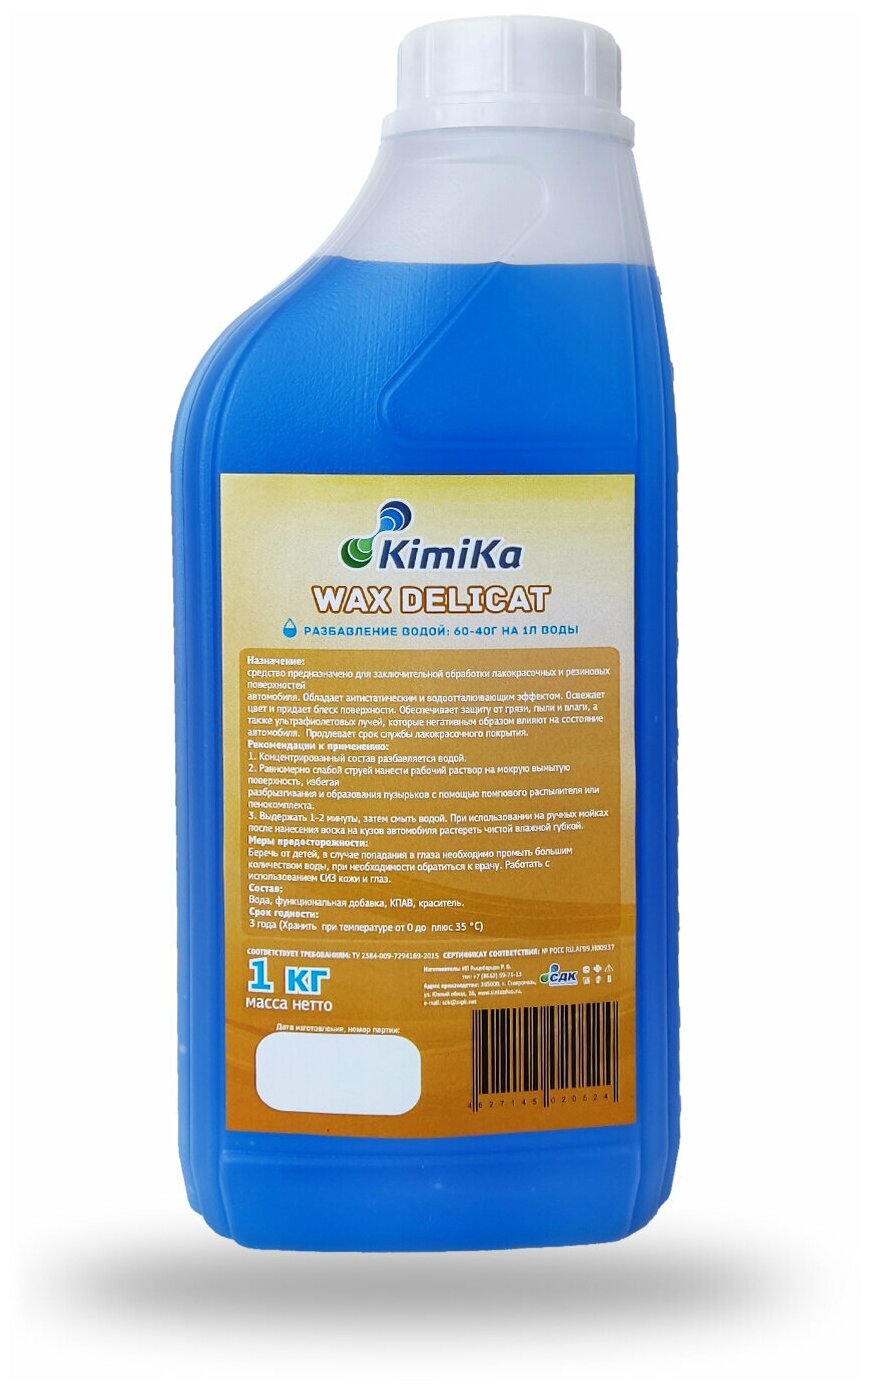 Воск полироль для кузова автомобиля KimiKa WAX DELICAT для быстрой сушки с антистатическим и водоотталкивающим эффектом аромат Манго-Гранат 1 л